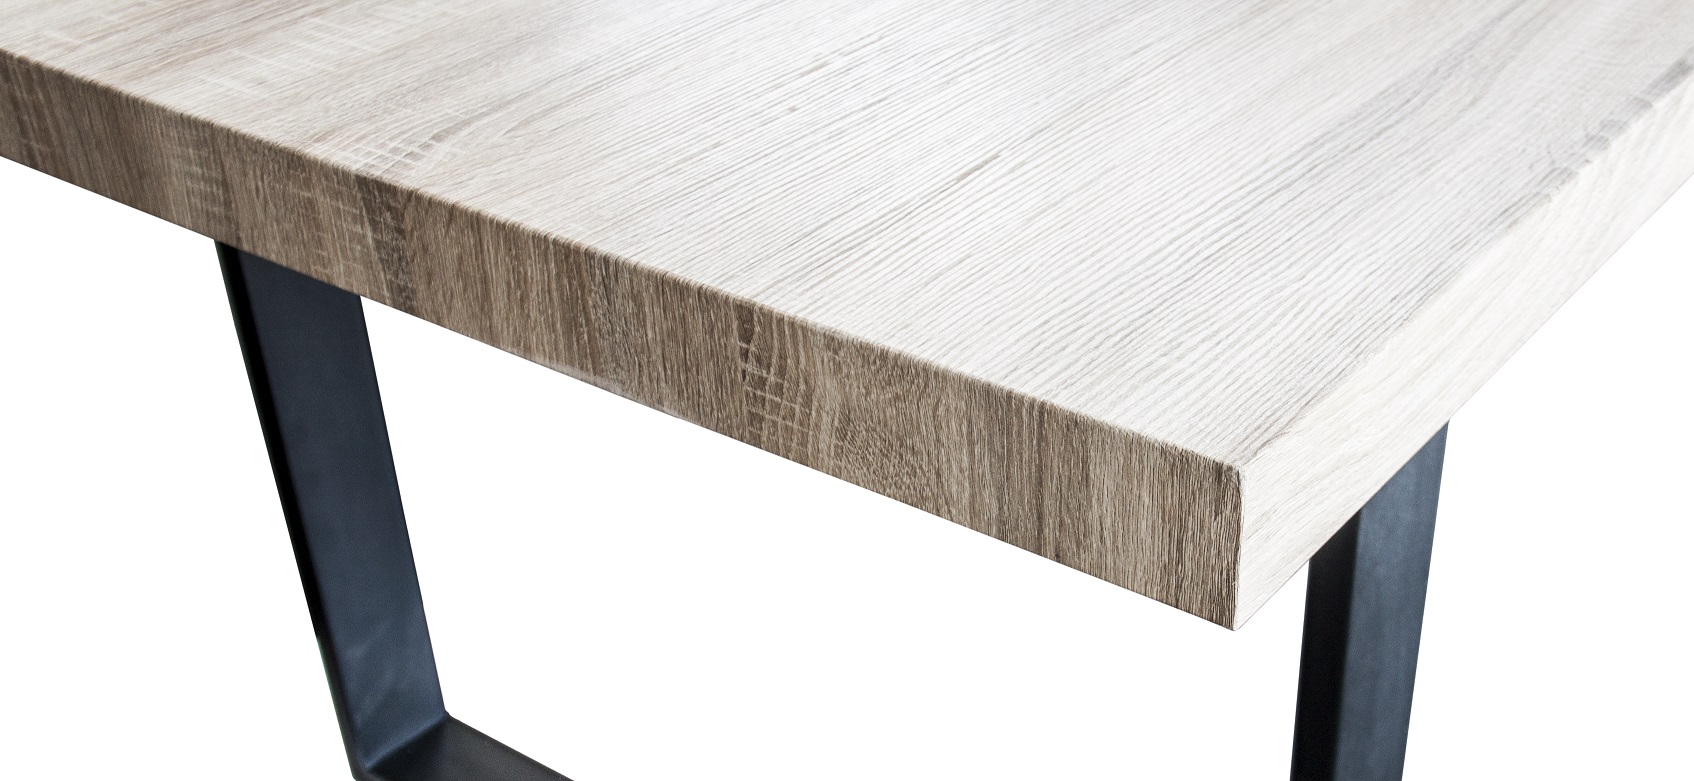 Esszimmertisch Esstisch Kufentisch Holztisch Tisch mit Tischplatte und Kufen - Sanoma Eiche + Schwarze Kufen 160x90